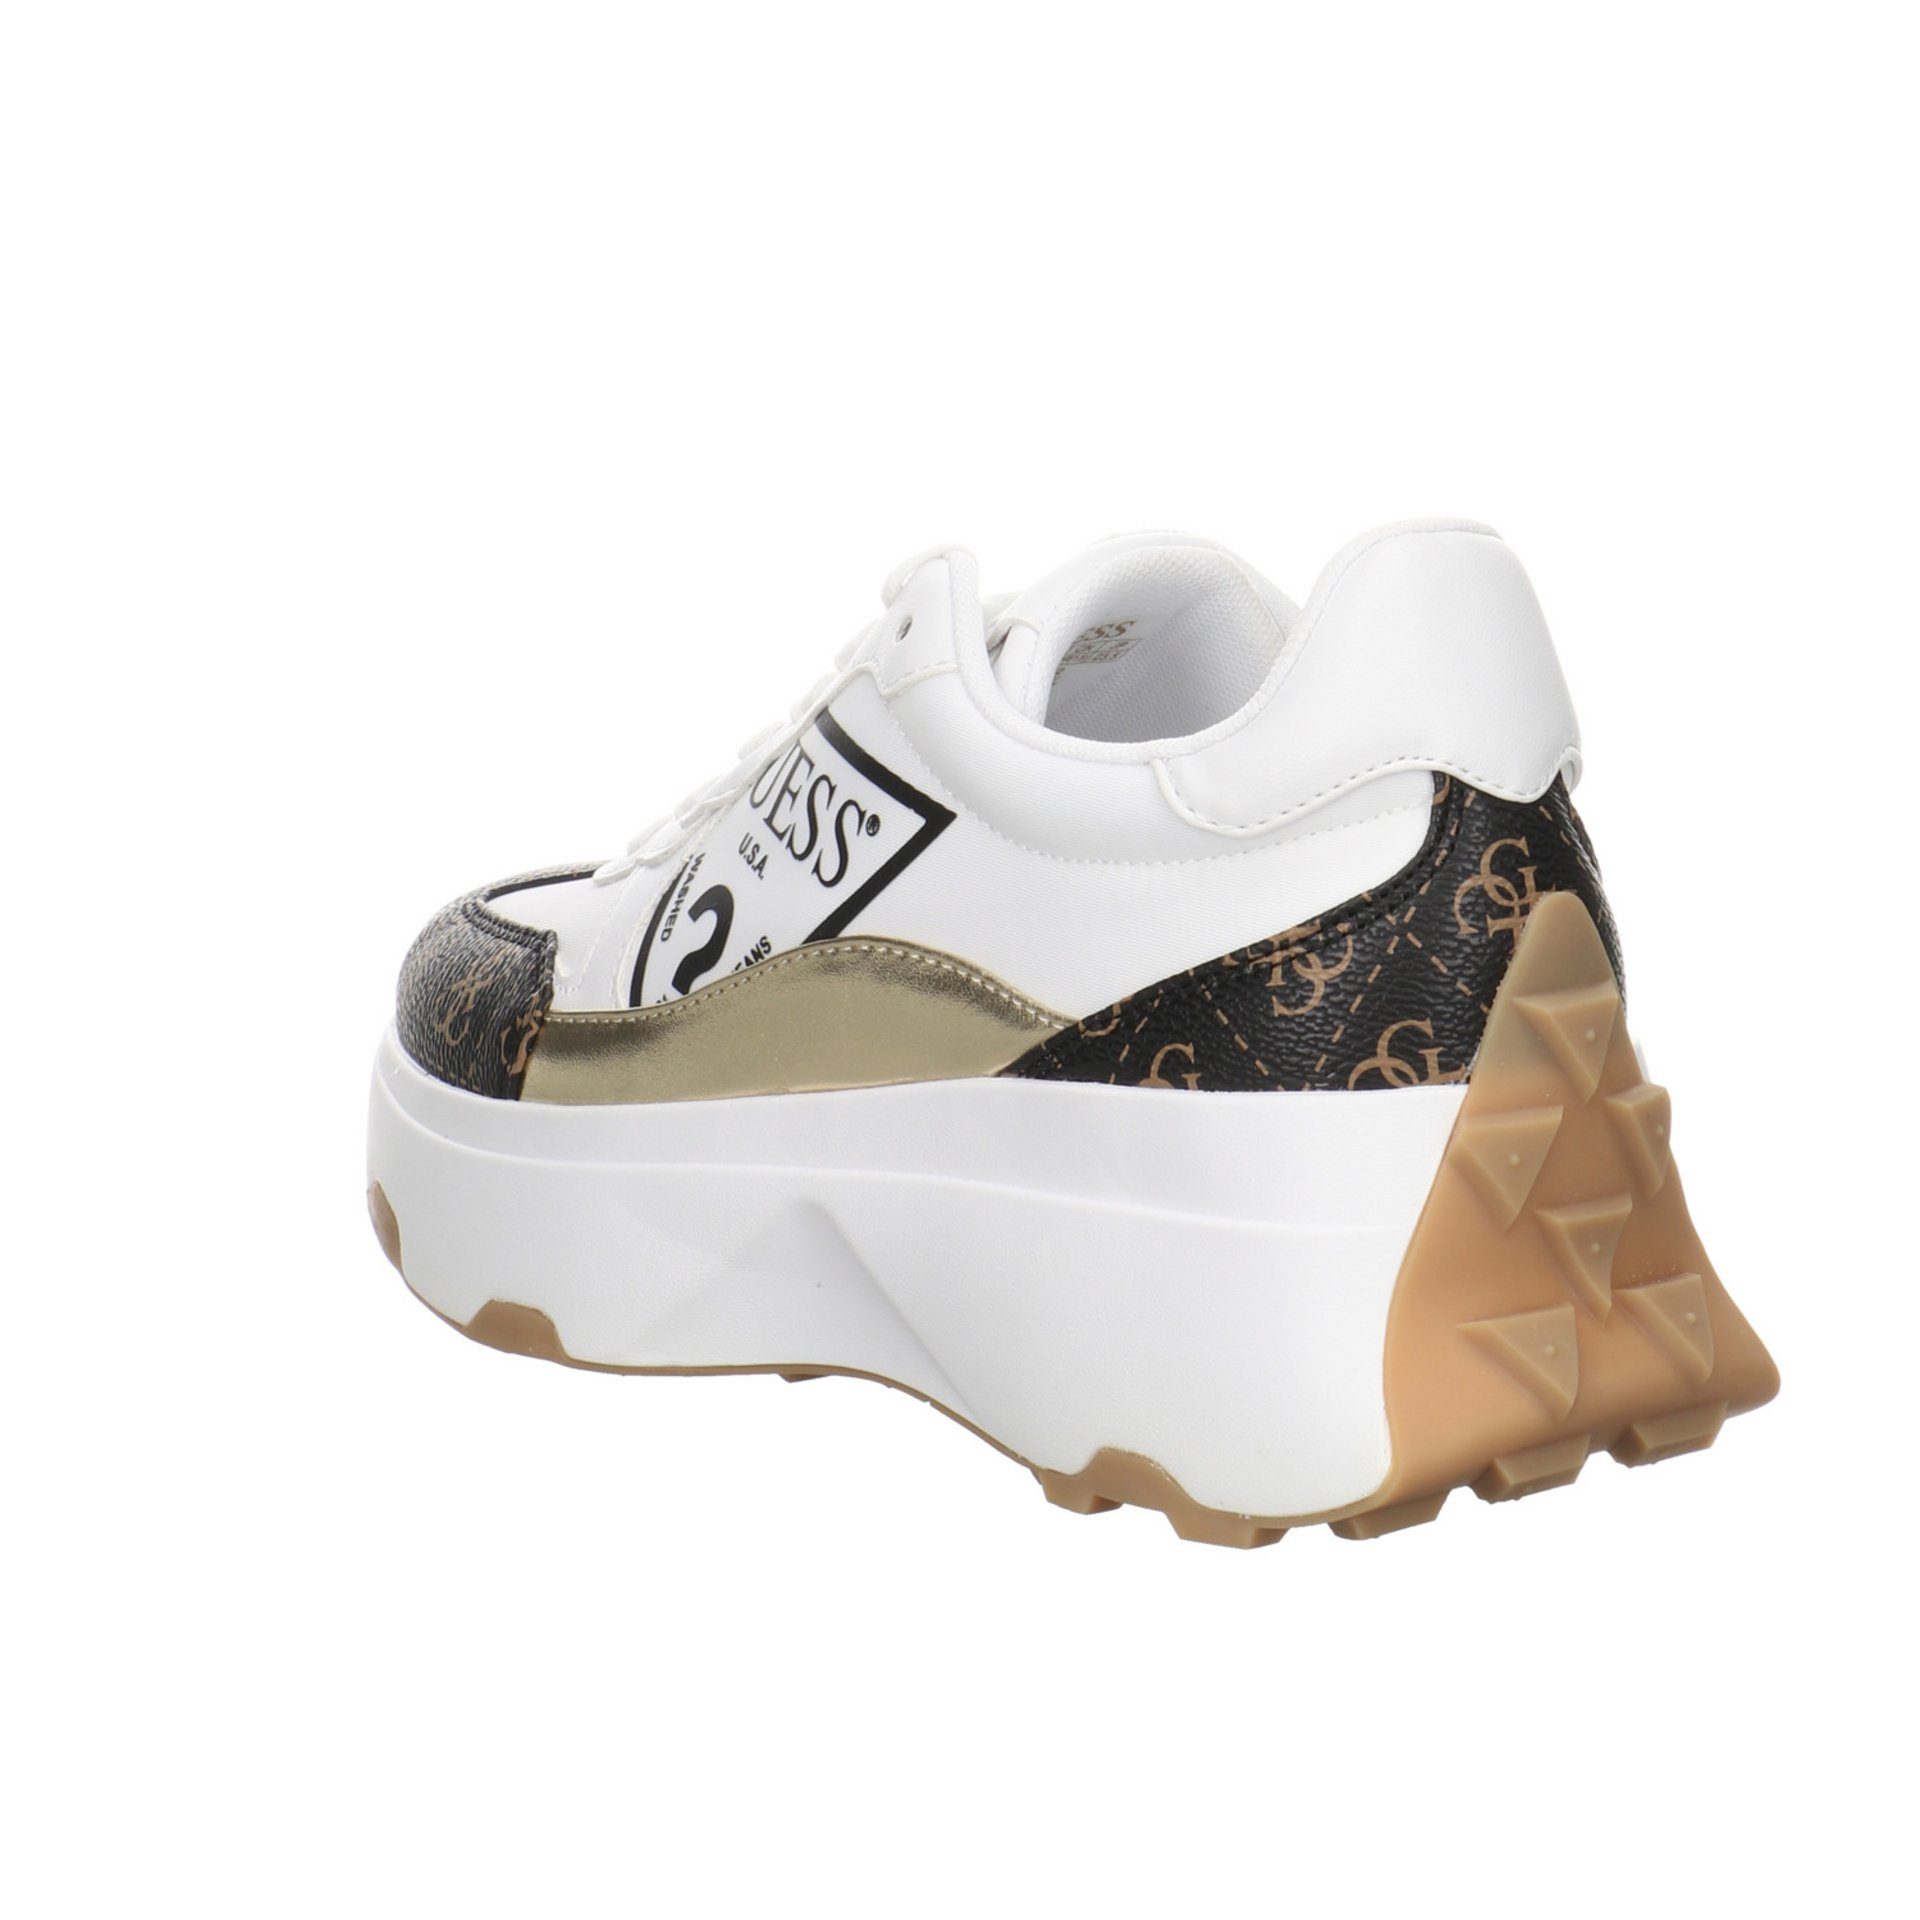 Sneaker Calebb Sneaker Synthetikkombination Runner GUESS white/brown/ocra Guess Schnürschuh CONNECT Damen Schuhe